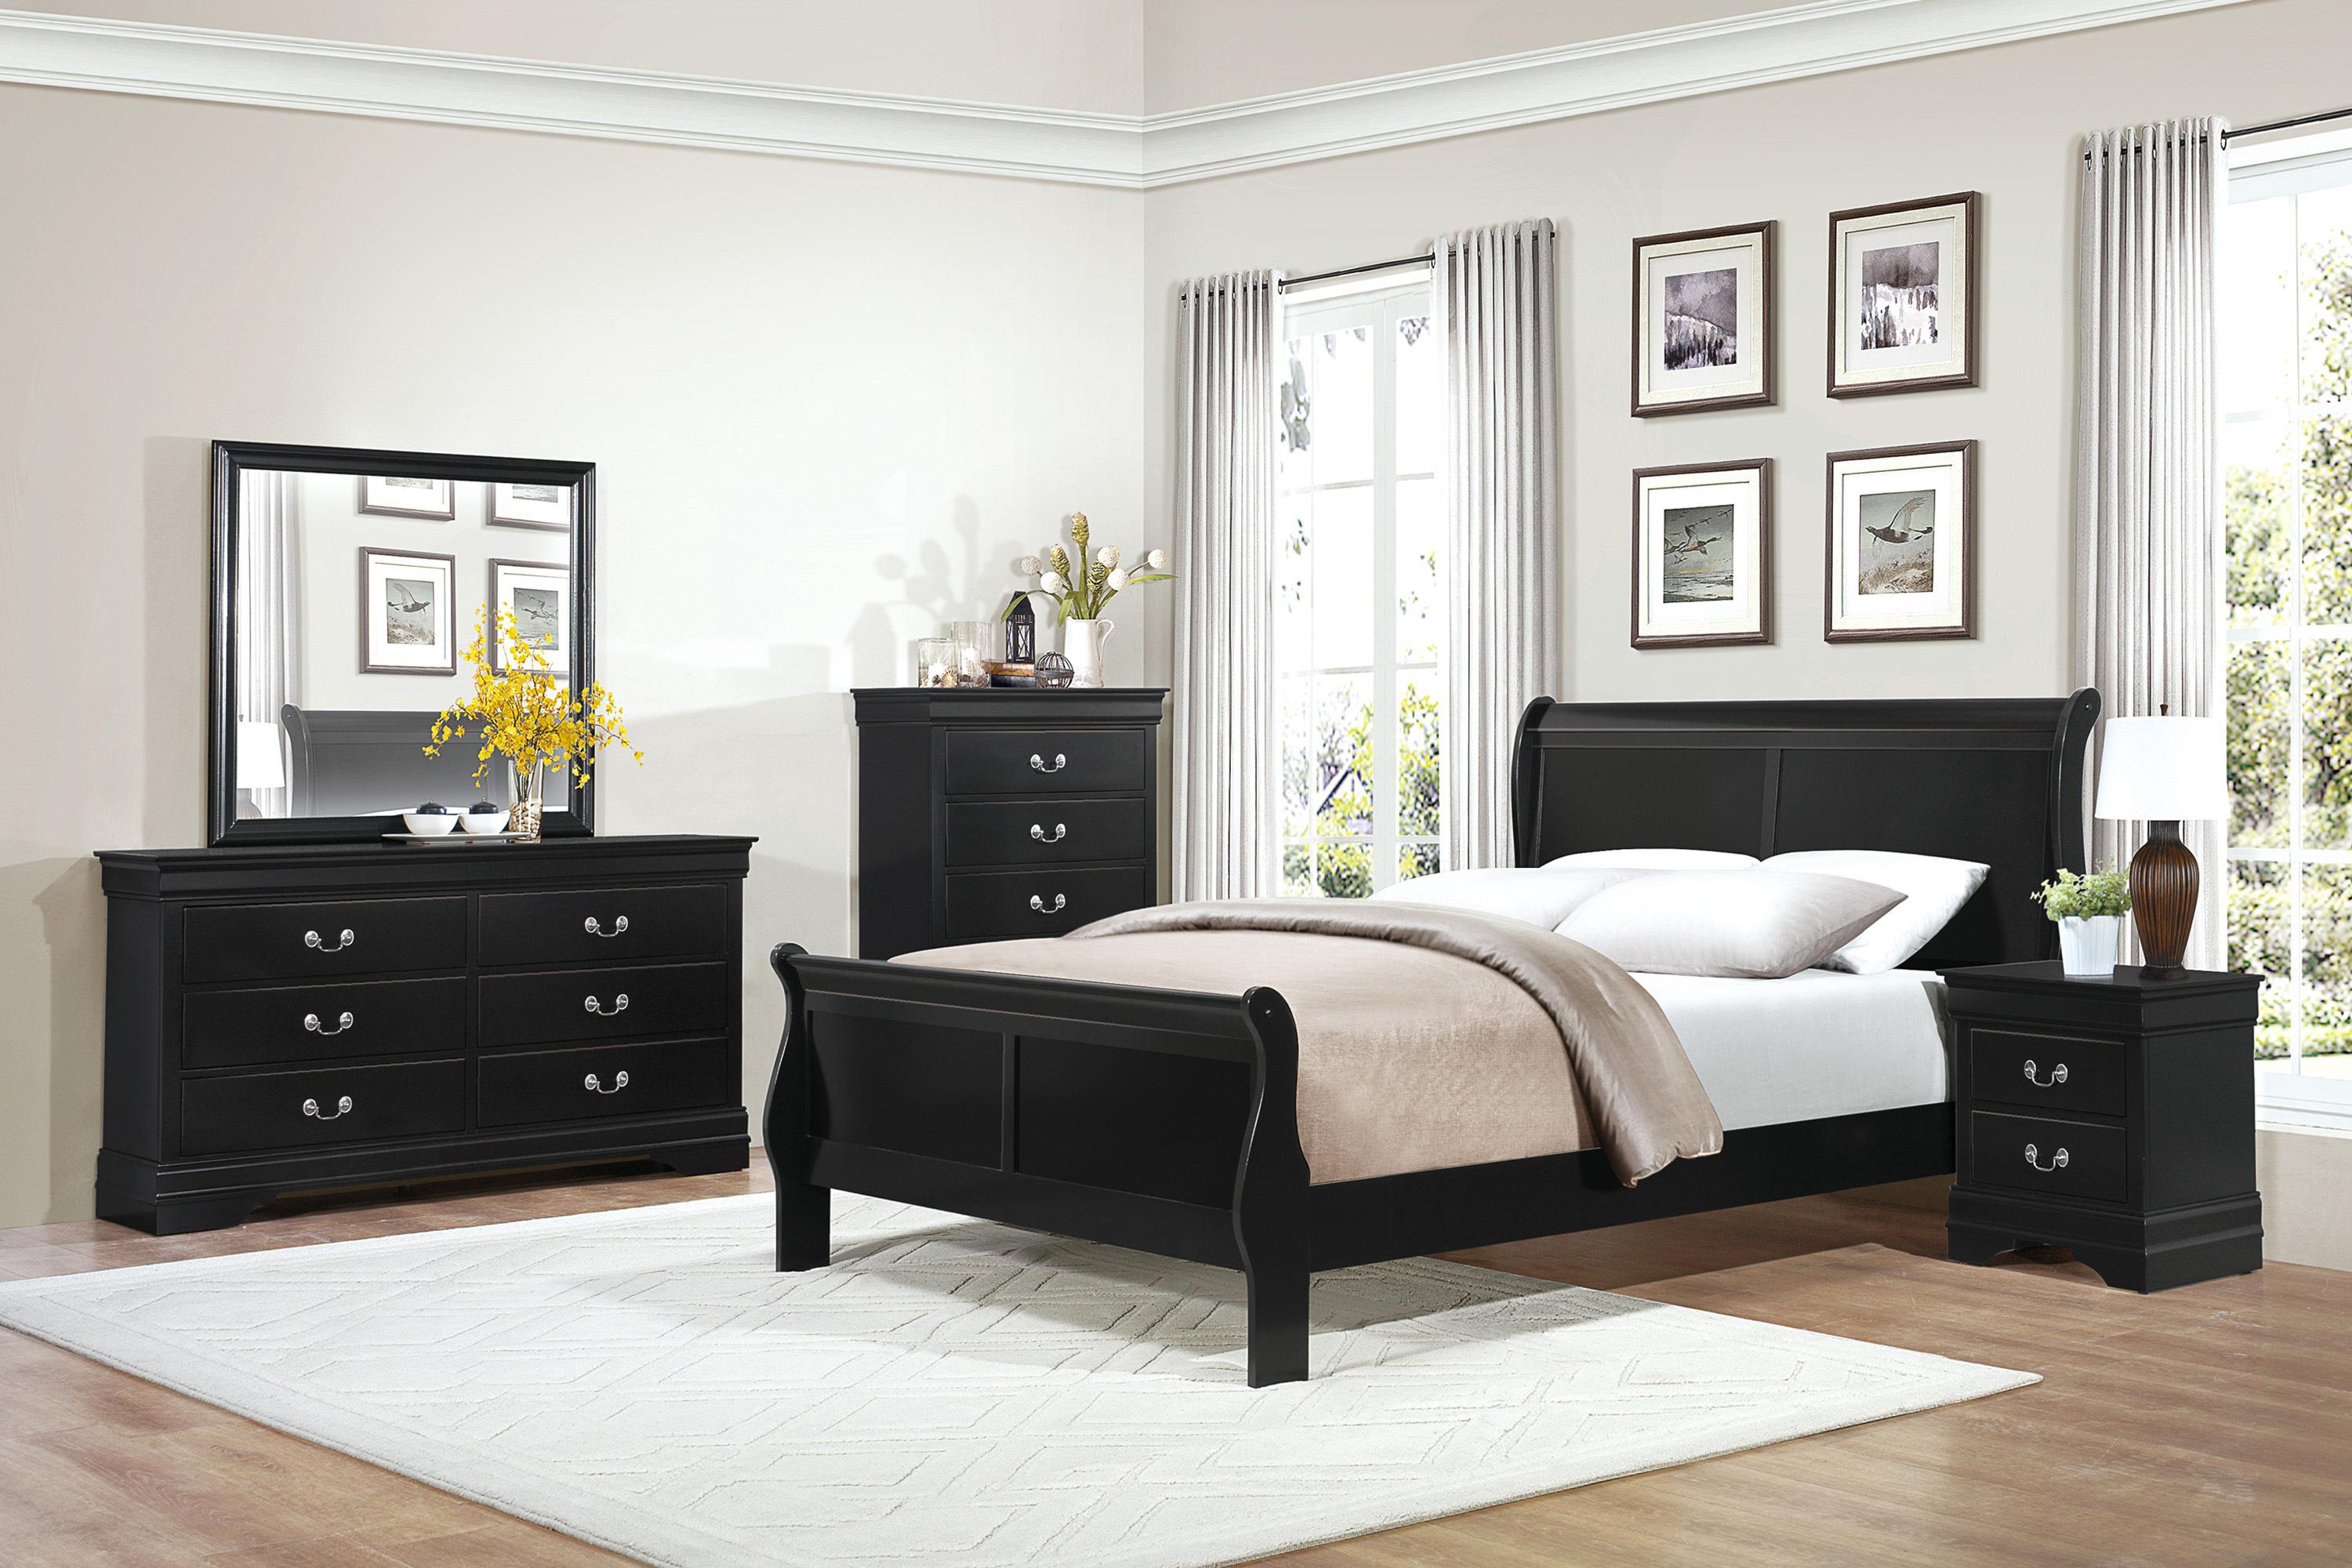 

    
Traditional Black Wood CAL Bedroom Set 5pcs Homelegance 2147KBK-1CK* Mayville
